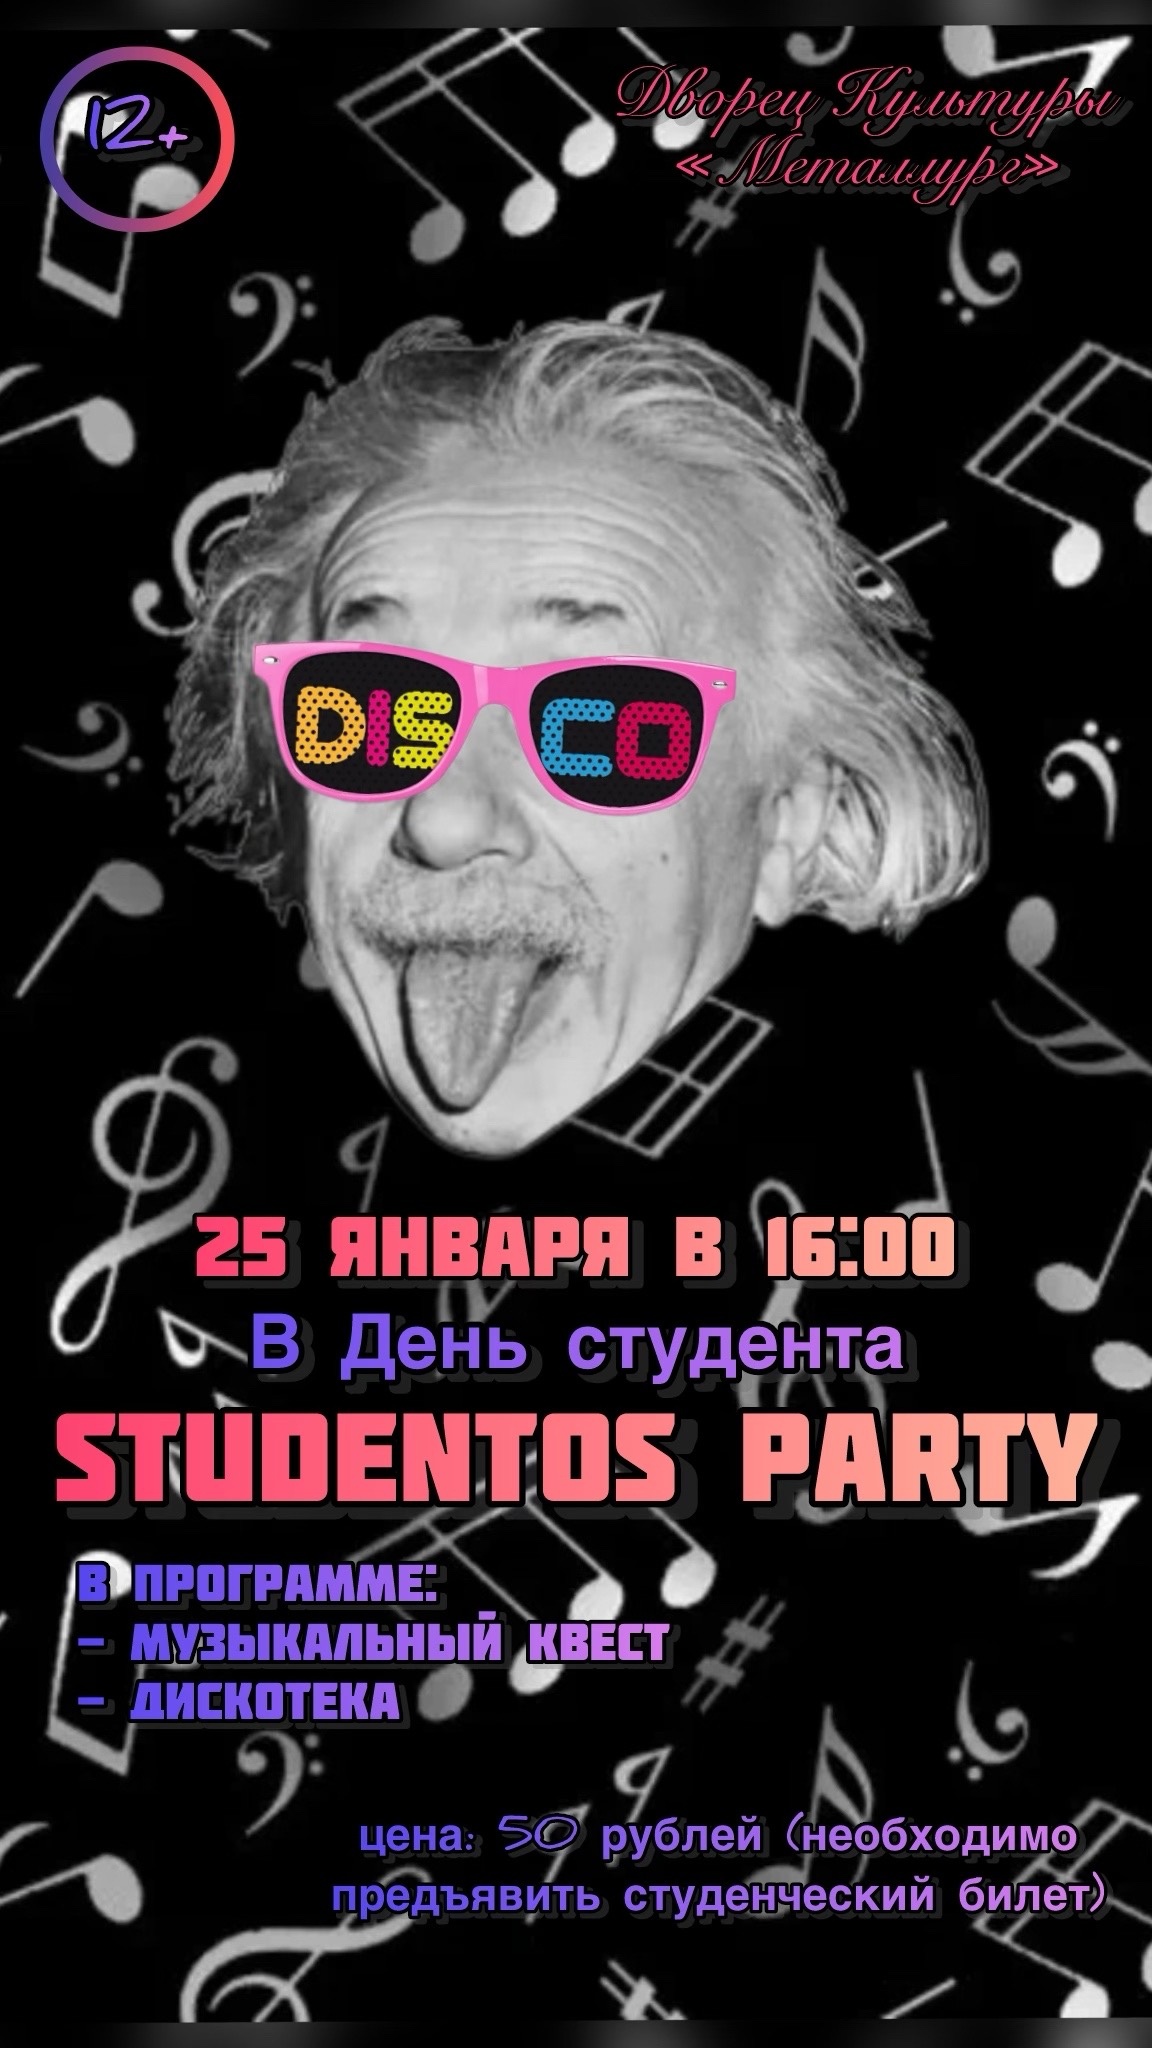 Развлекательная программа к Дню студента «Studentos party» (12+).